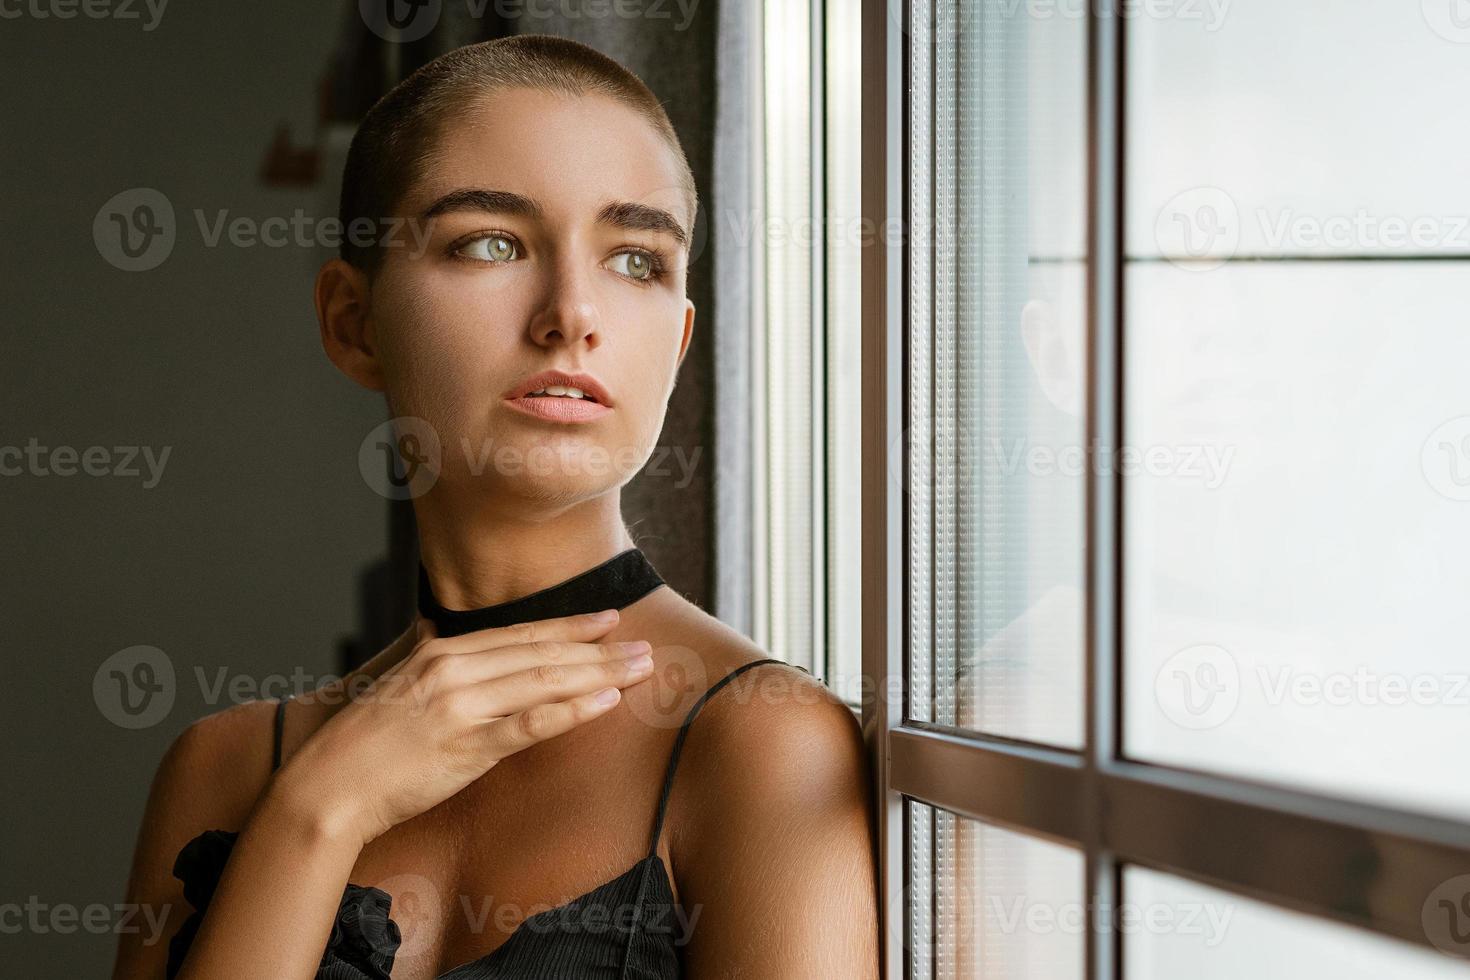 Porträt einer traurigen jungen Frau mit kurzen Haaren, die in einem schwarzen Kleid aus dem Fenster schaut foto